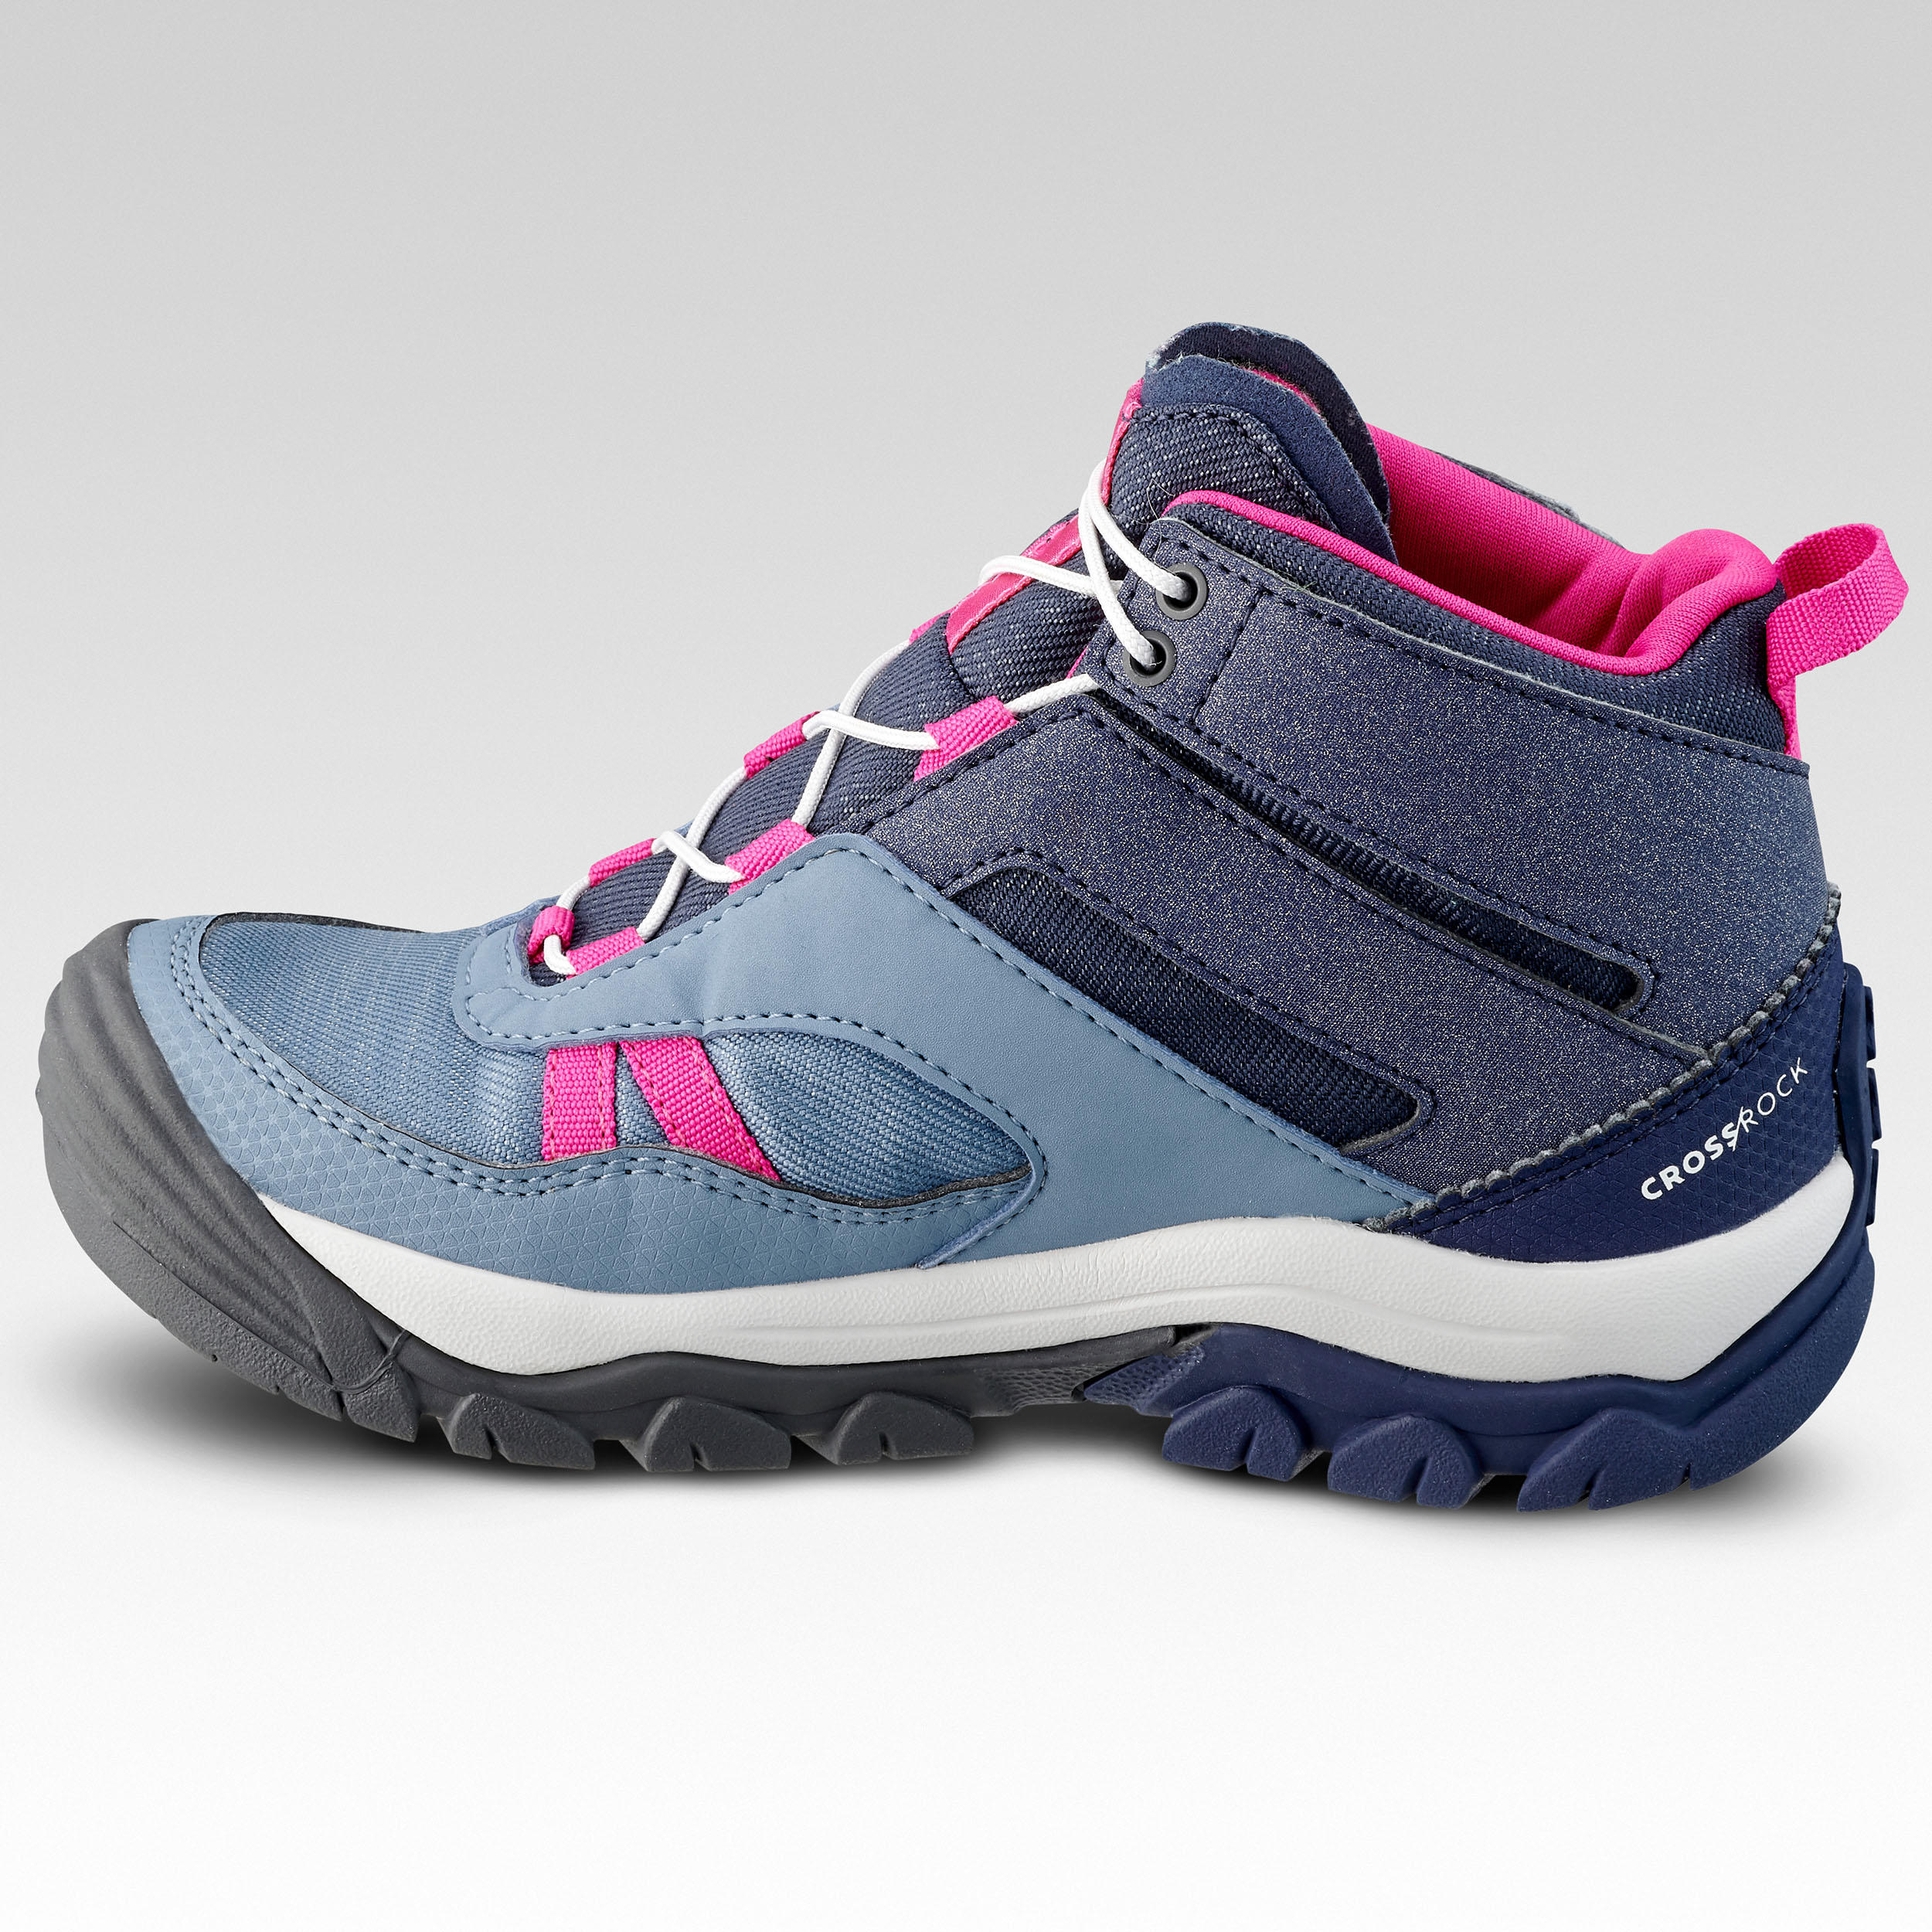 Children's waterproof walking shoes - CROSSROCK MID blue - size jr. 10 - ad. 2 4/9